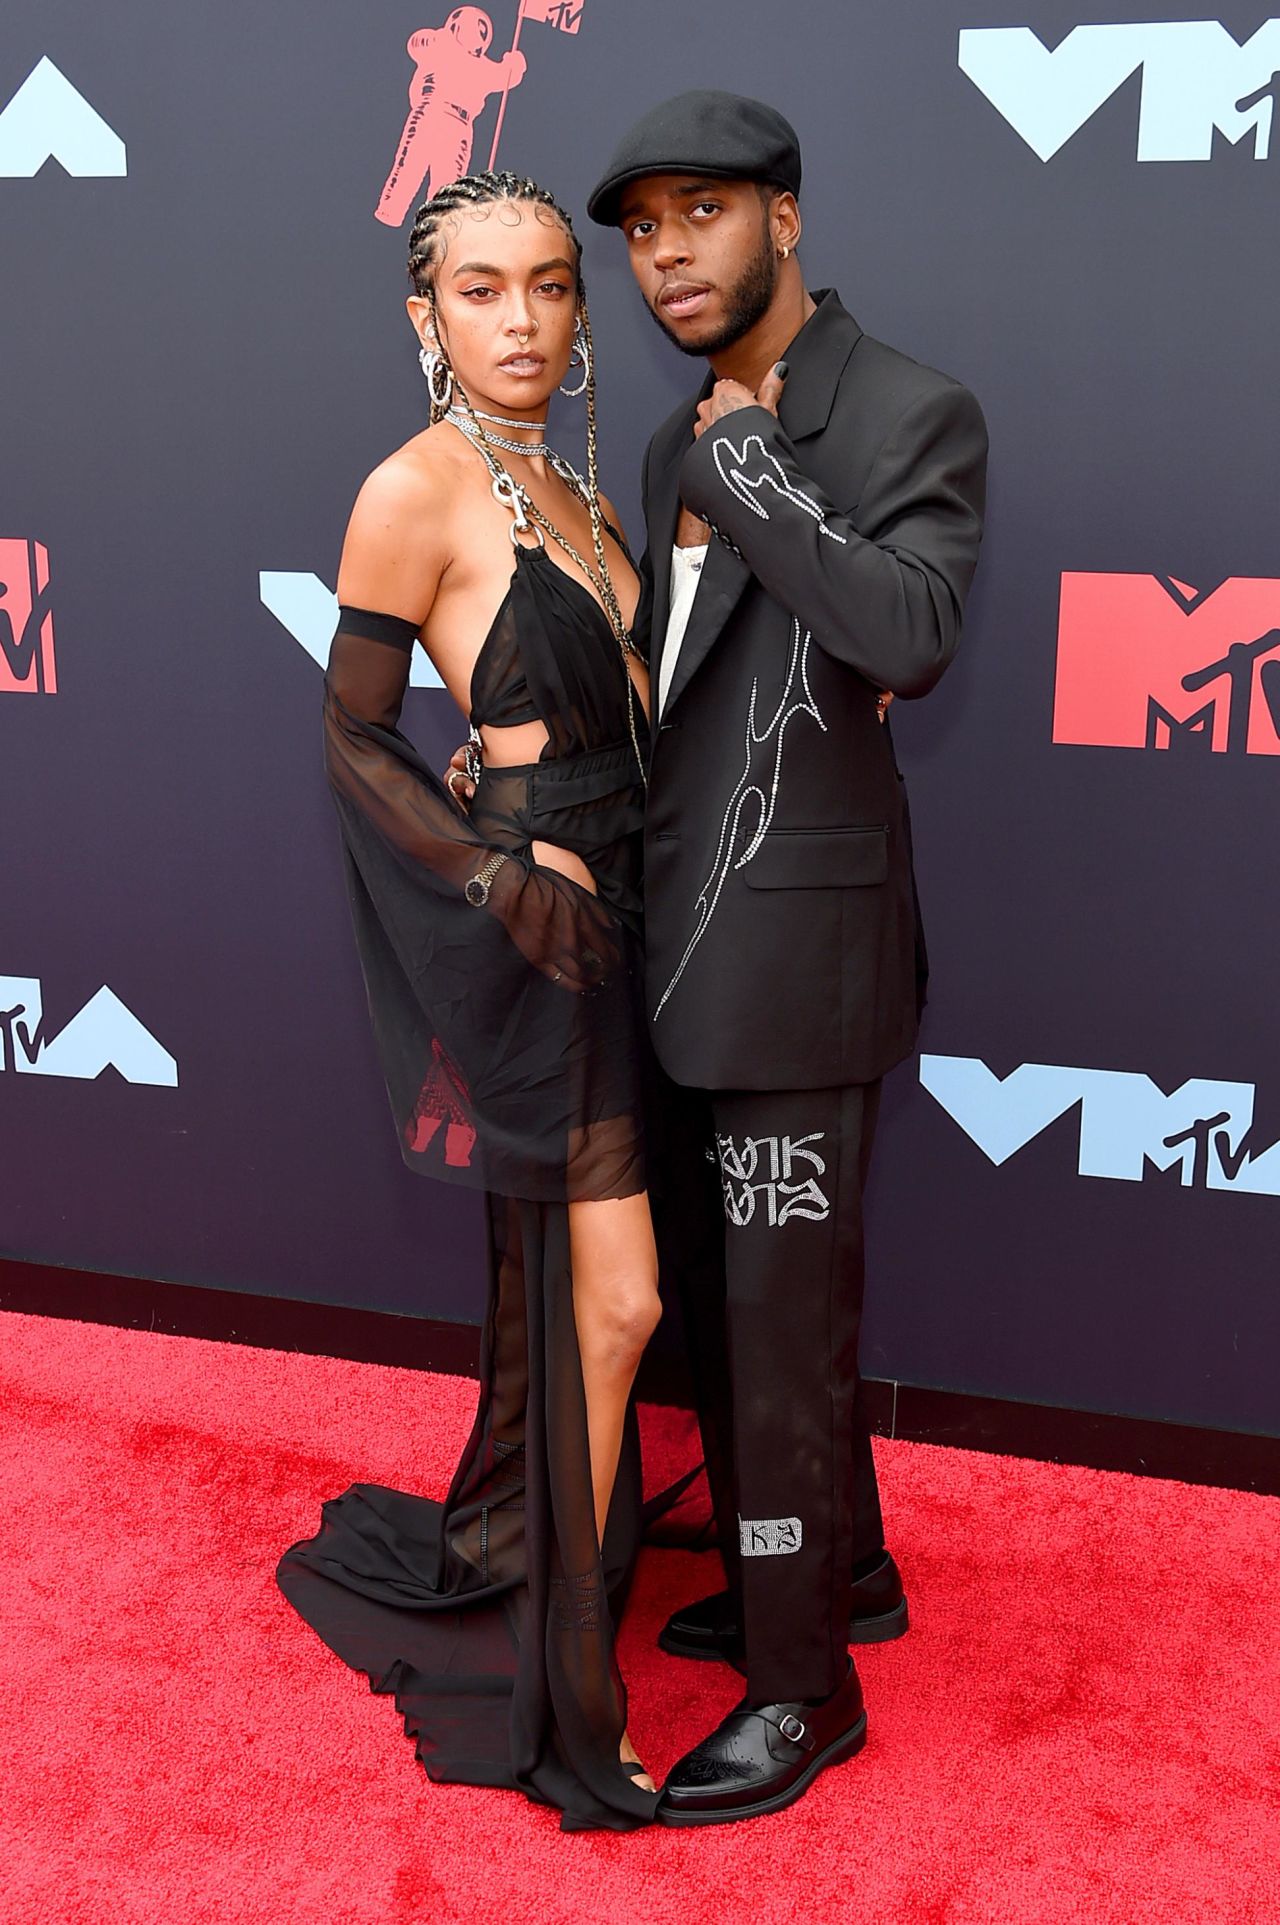 gusto Alojamiento Bolos MTV VMAs red carpet photos 2019 | CNN